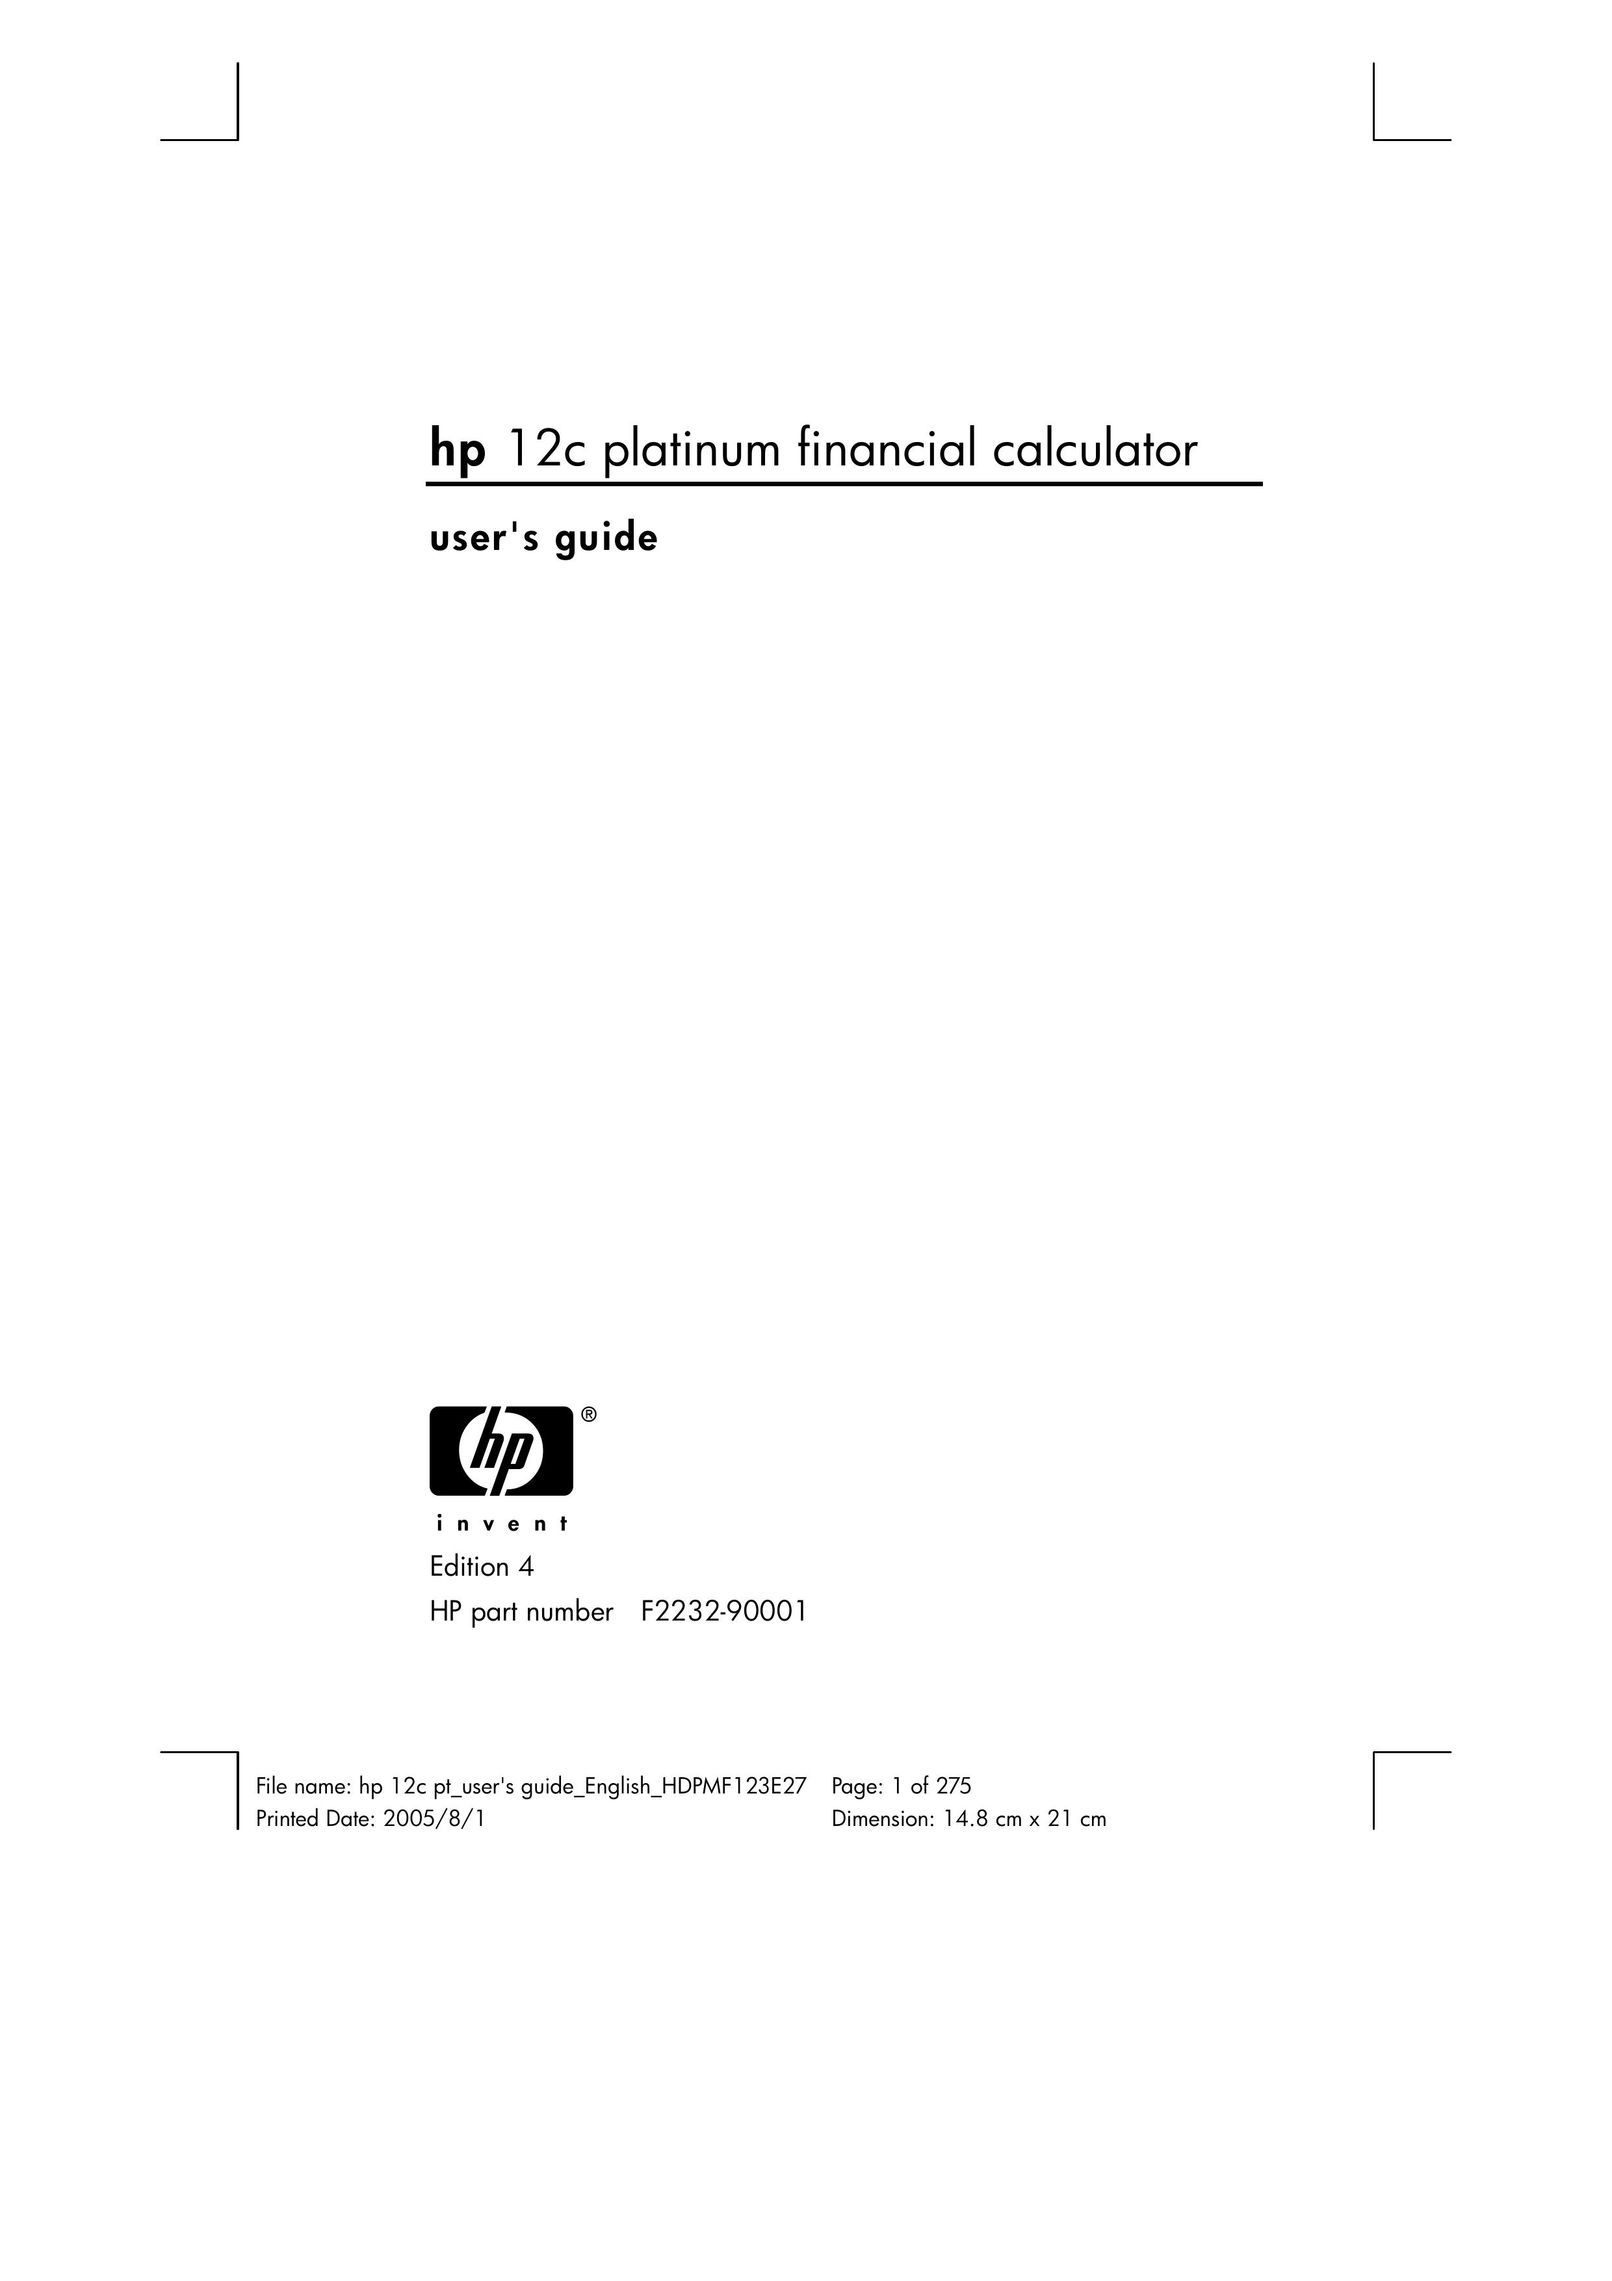 HP (Hewlett-Packard) 12C Calculator User Manual